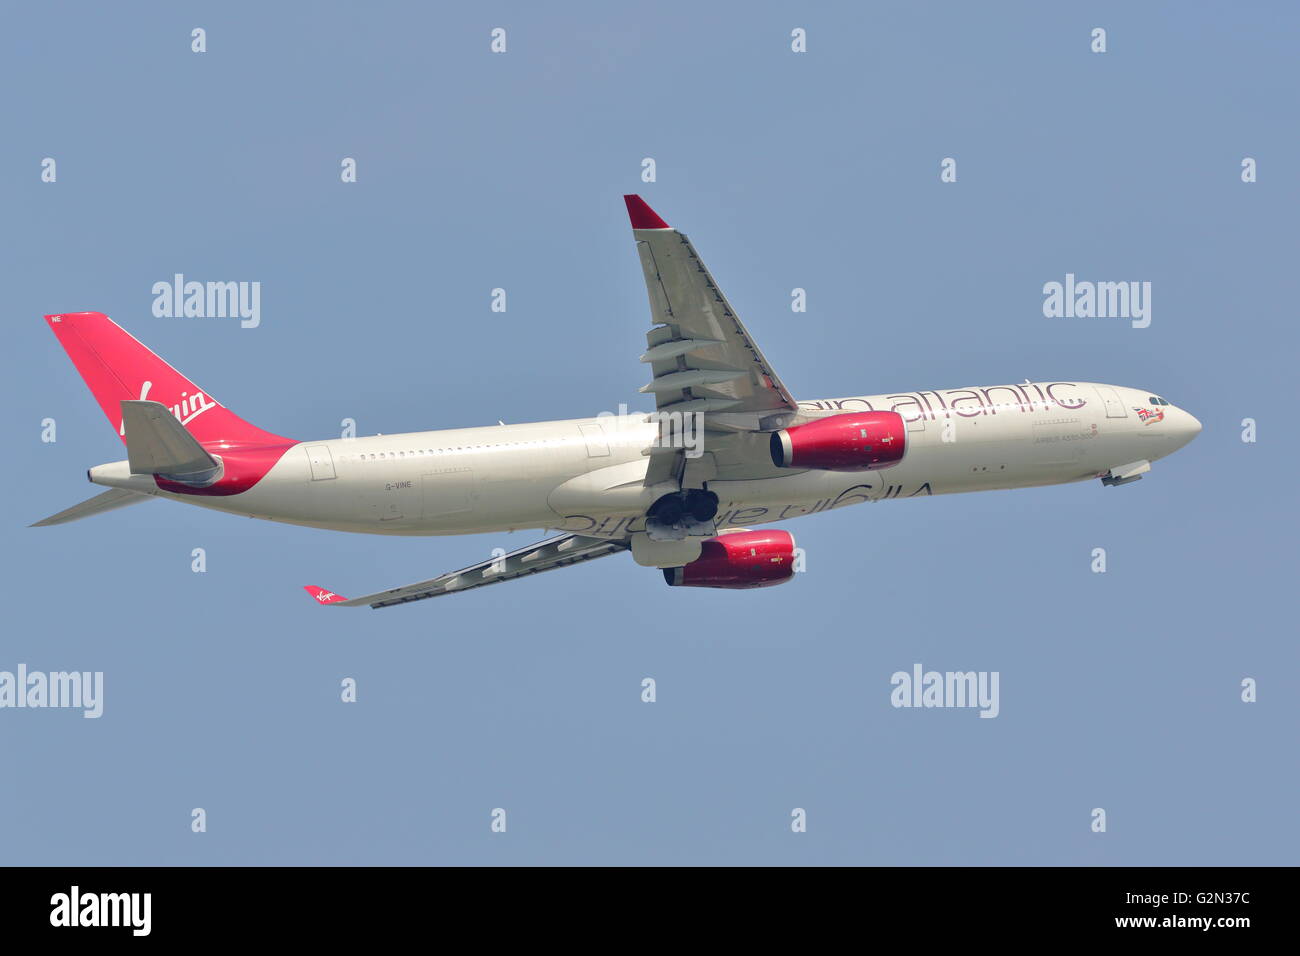 Virgin Atlantic Airbus 330-300 G-vine, au départ de l'aéroport Heathrow de Londres, UK Banque D'Images